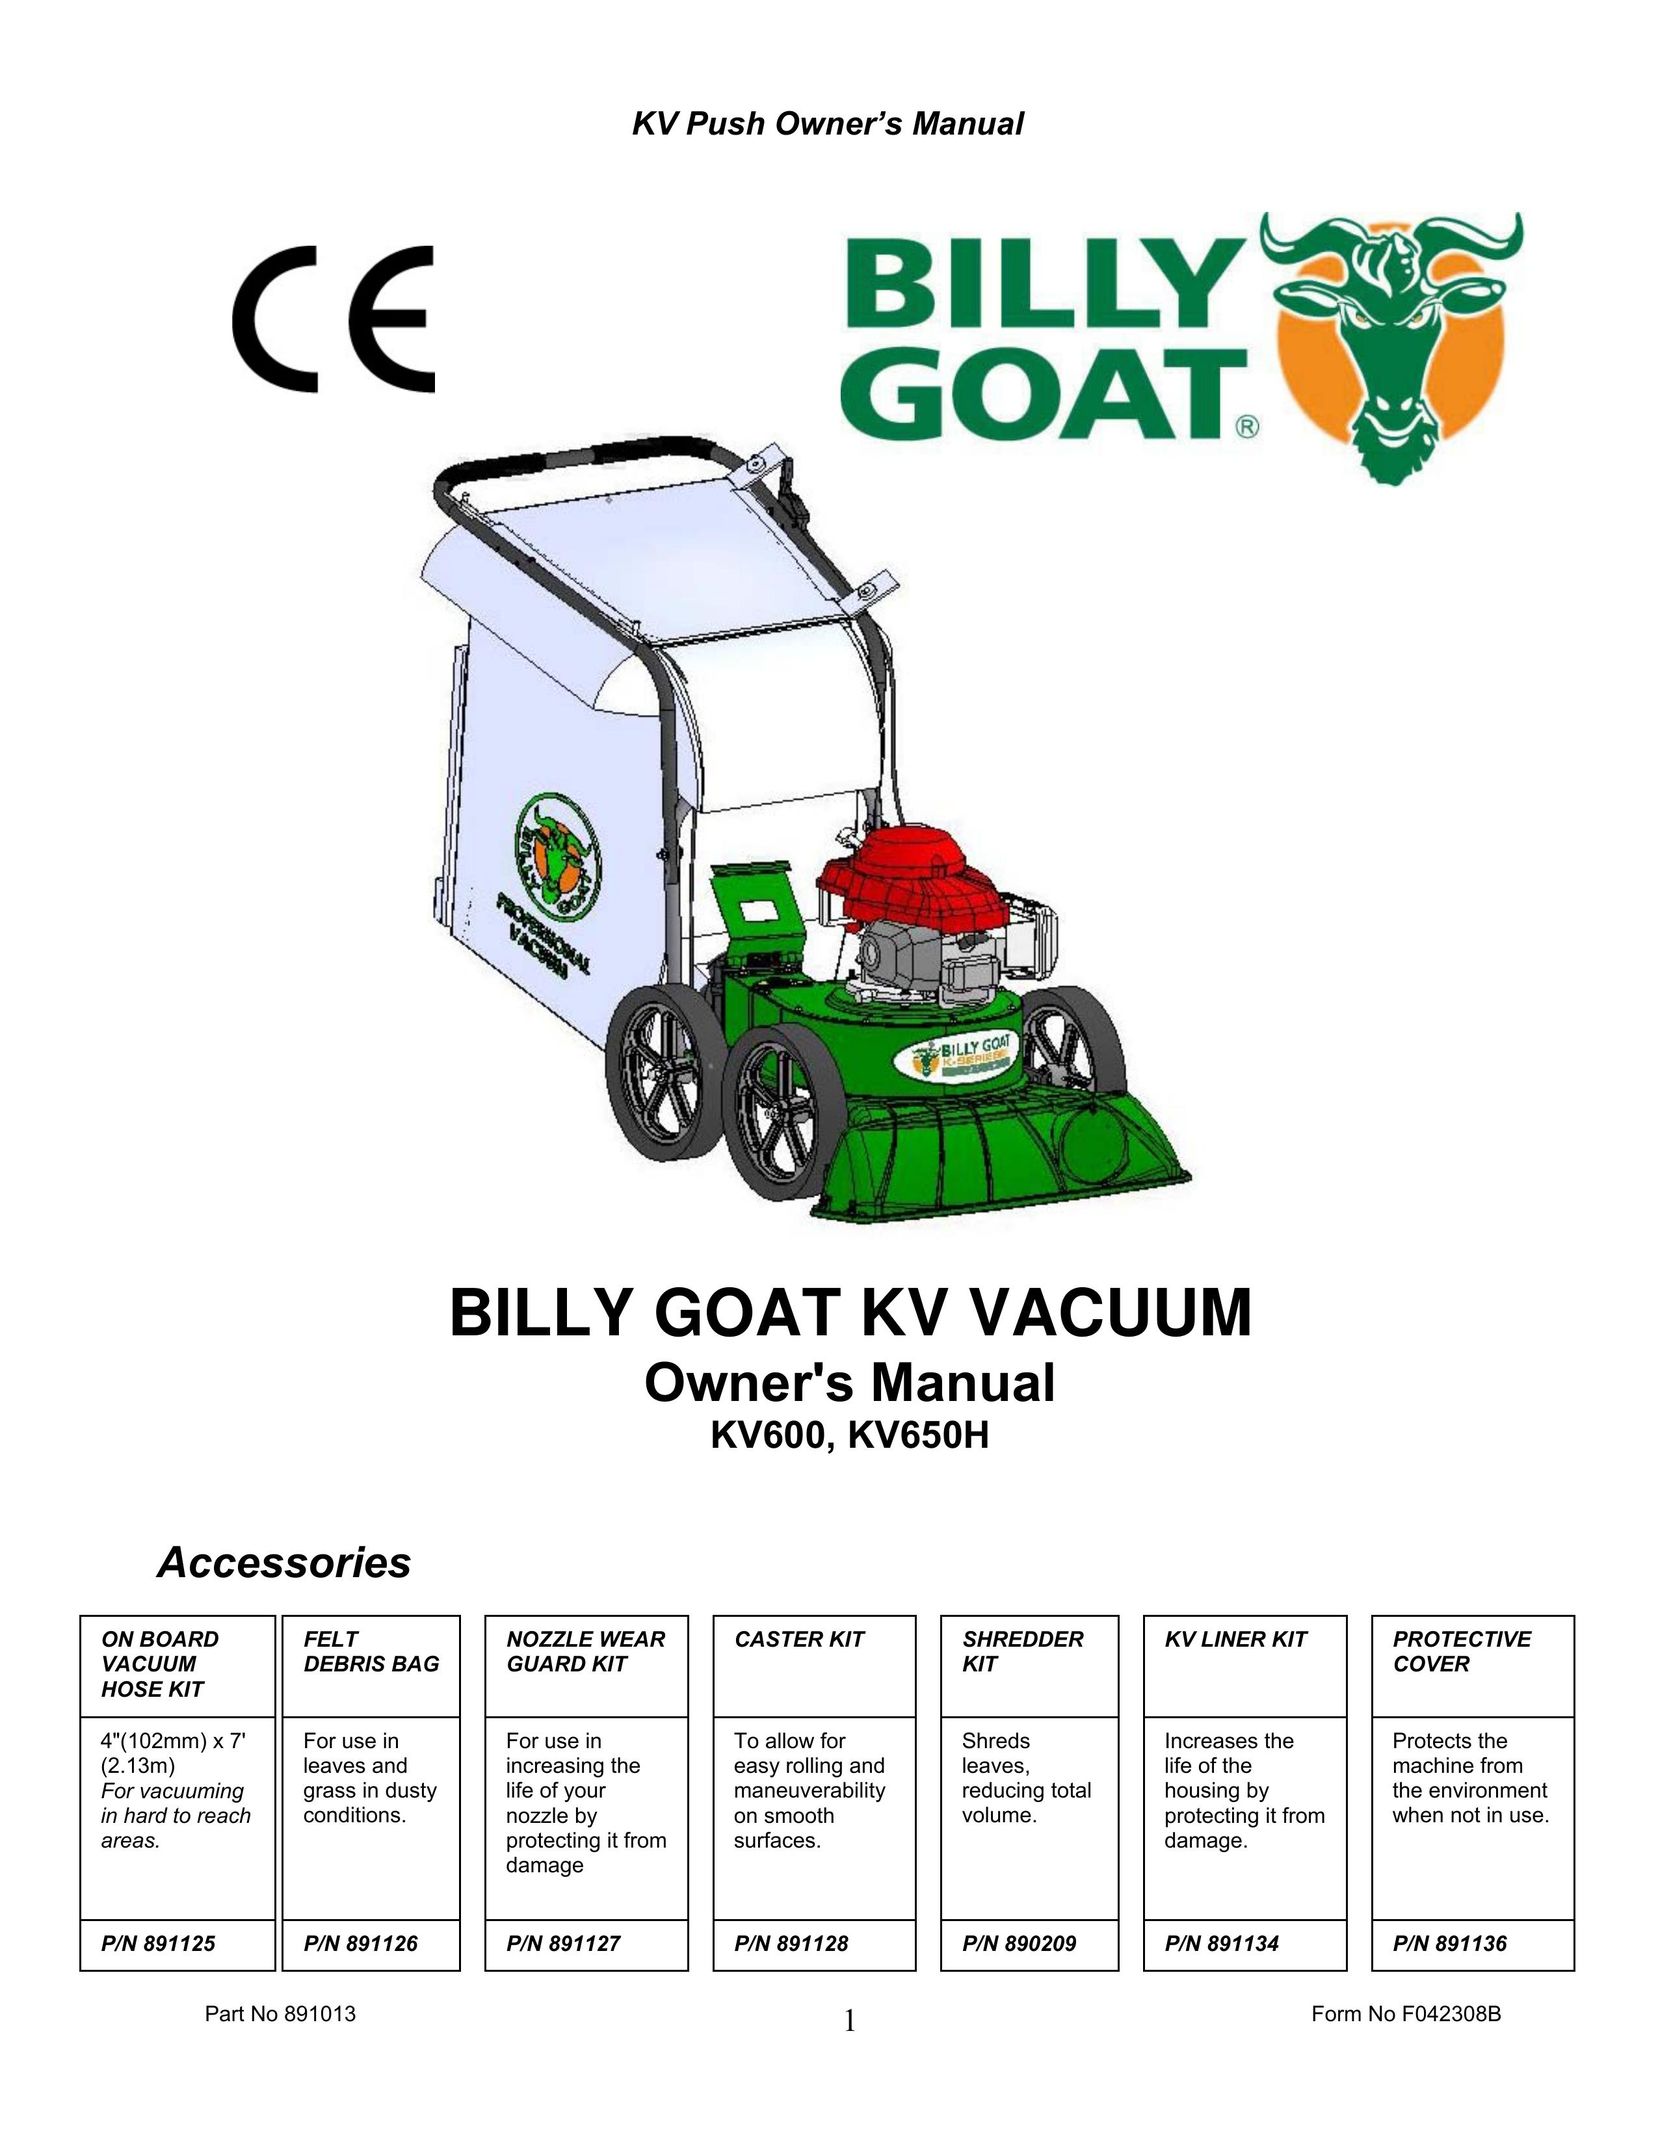 Billy Goat KV650H Vacuum Cleaner User Manual